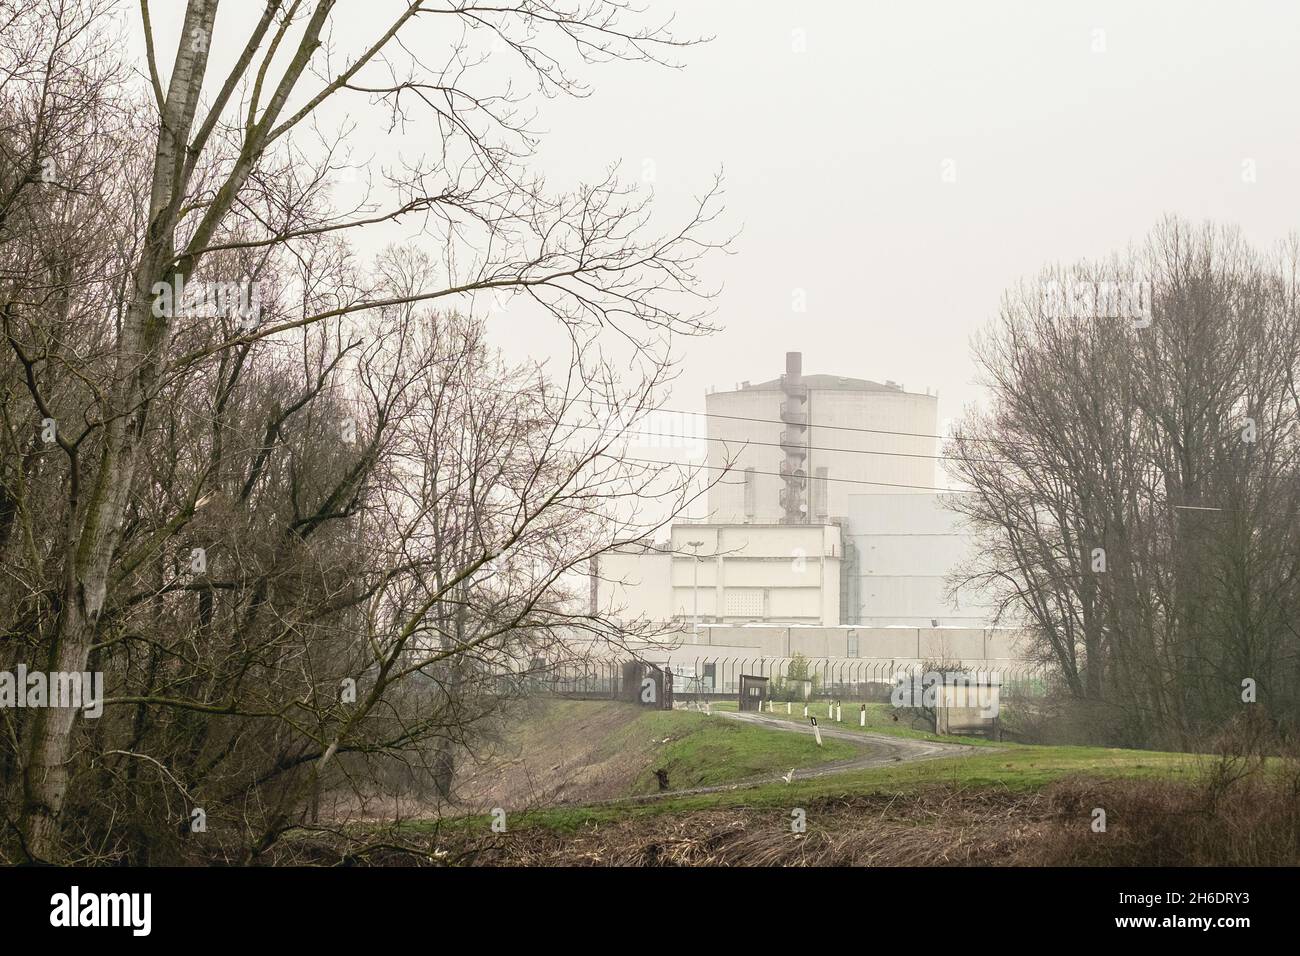 Centrale nucleare di Zerbio di Caorso (PC), Italia Foto Stock